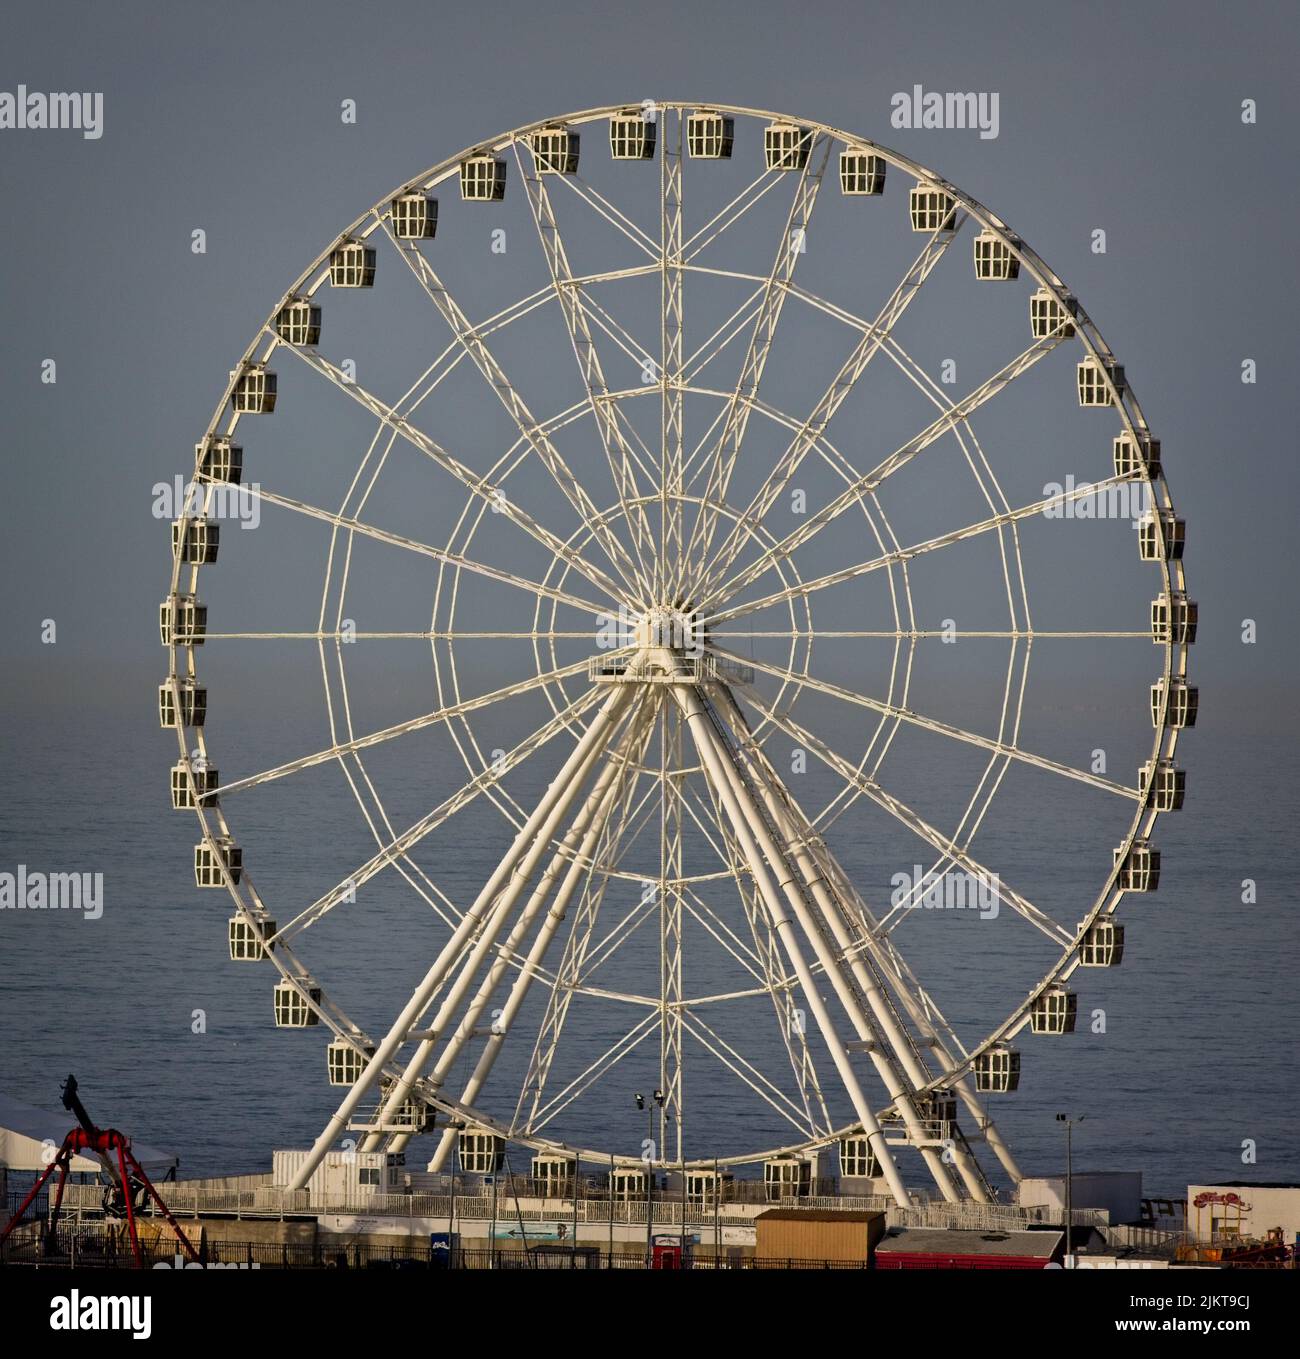 Eine Frontalaufnahme eines Riesenrads im Hintergrund einer Meereslandschaft. Stockfoto